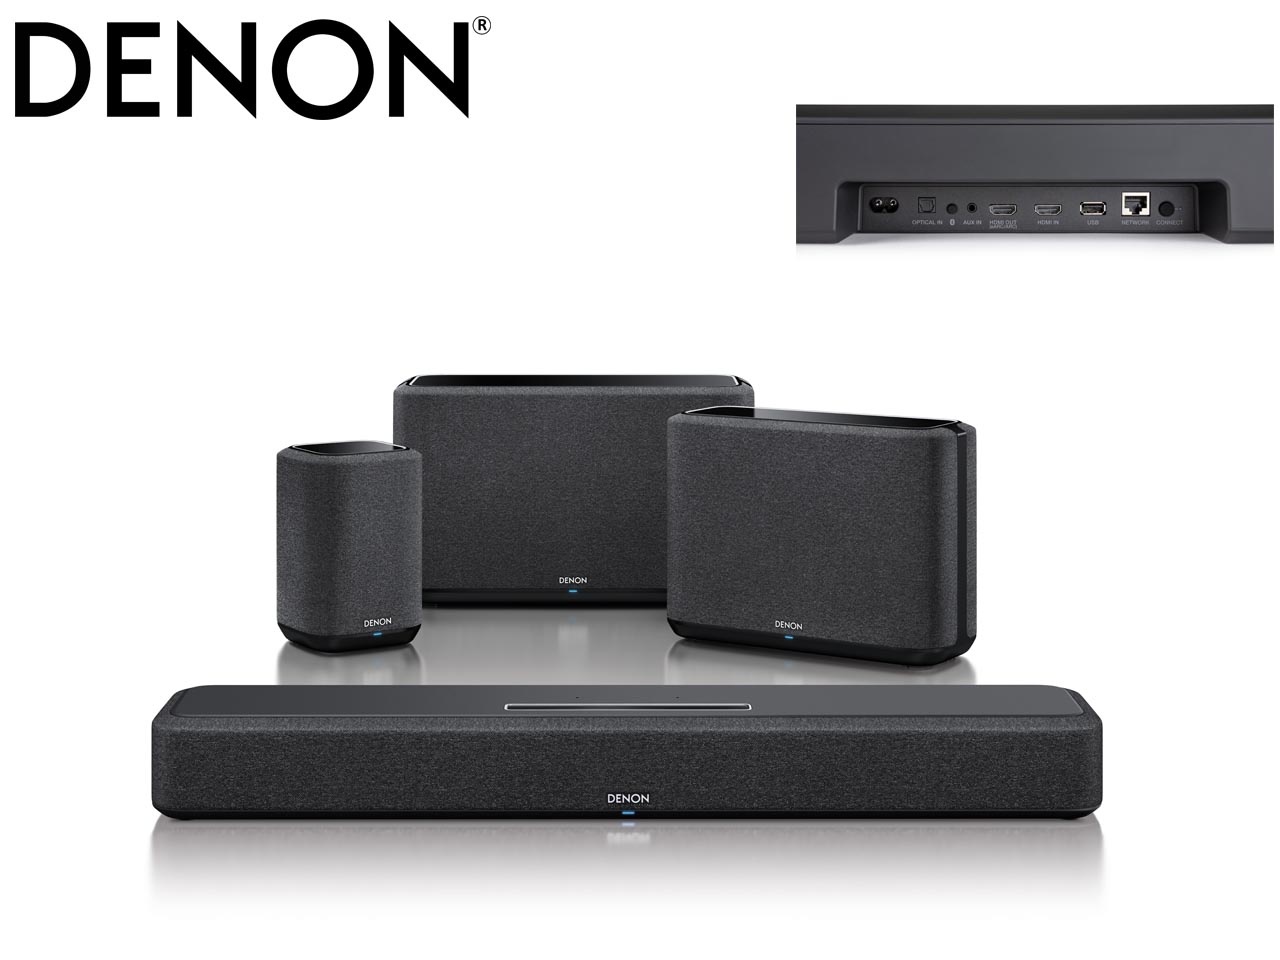 Denon ajoute une barre de son premium avec un son 3D à sa gamme Denon Home, un écosystème d’enceintes multiroom haute résolution